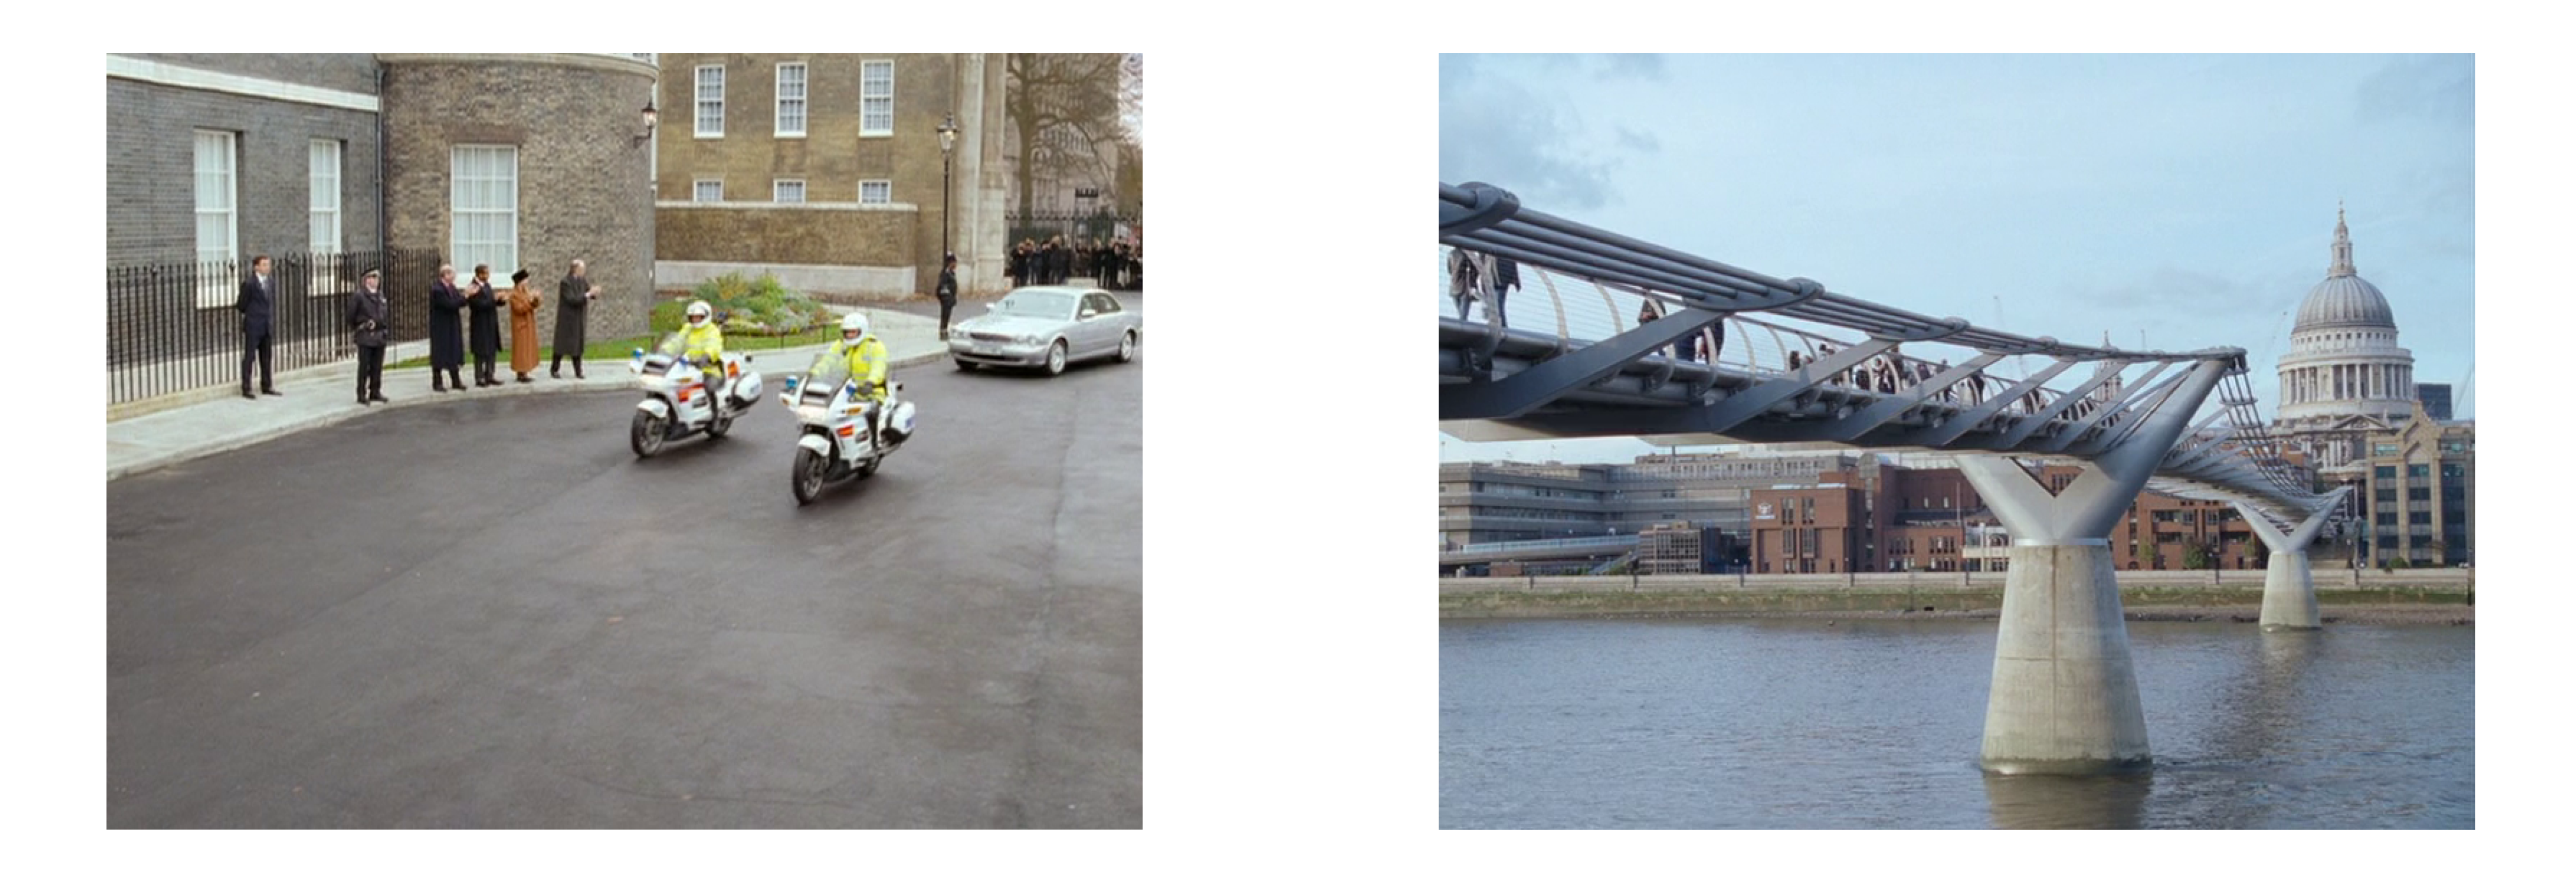 Слева: Даунинг-стрит, 10. Прибытие кортежа к правительственному зданию. Справа: Знаменитый мост Тысячелетия (или мост Миллениум) — пешеходный мост через Темзу по проекту Нормана Фостера